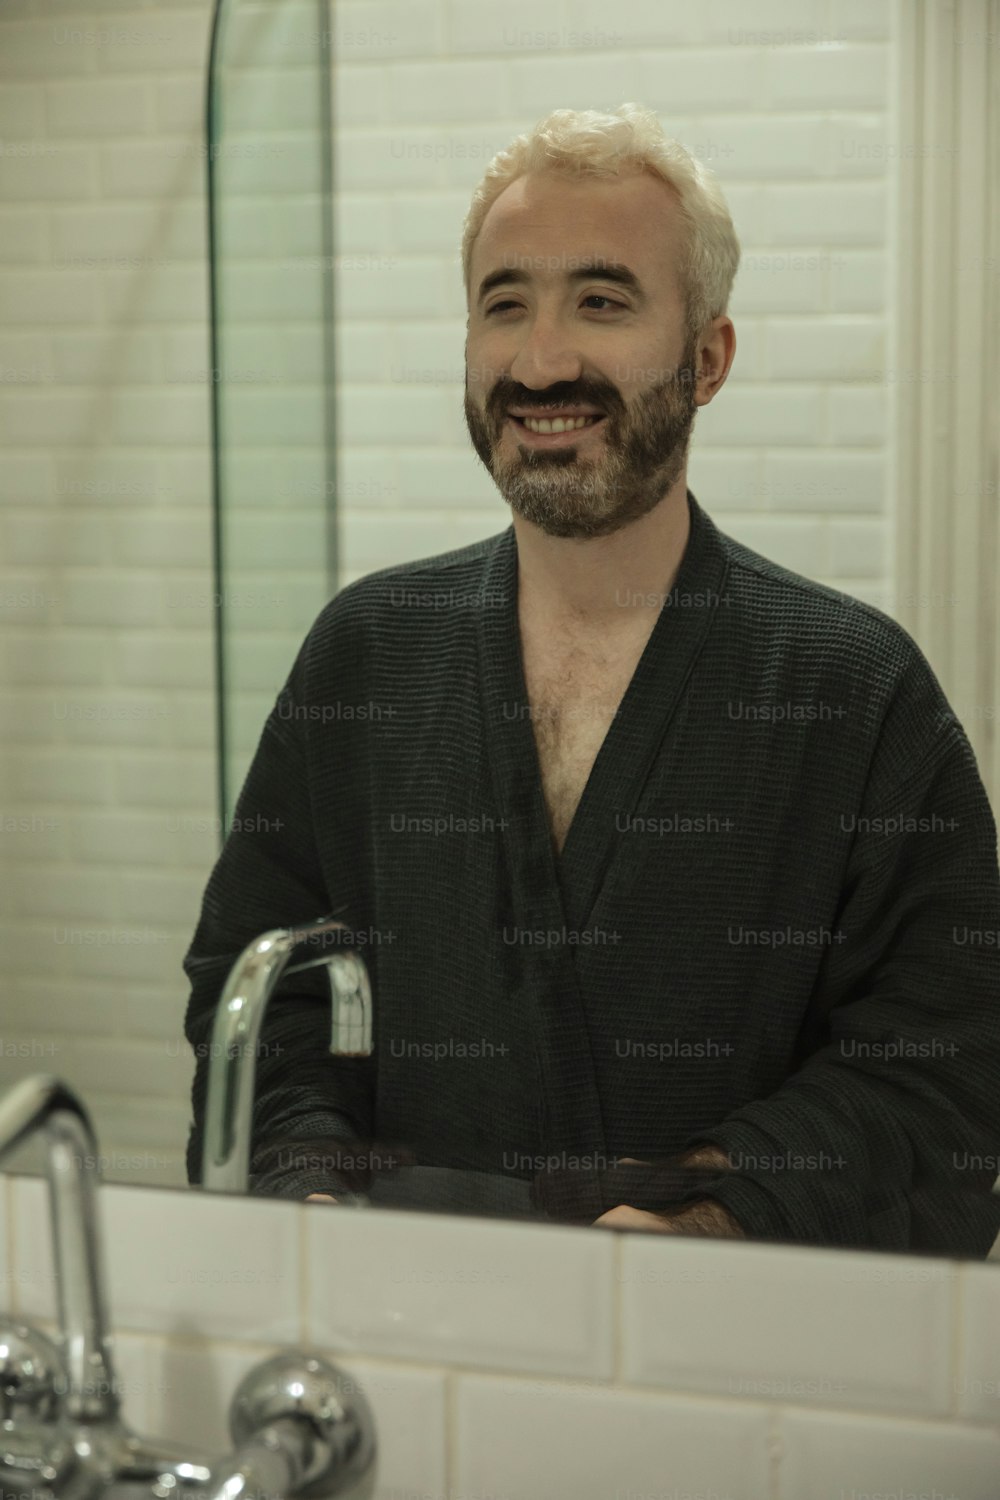 흰 머리와 수염을 가진 남자가 욕실 거울 앞에 서 있다